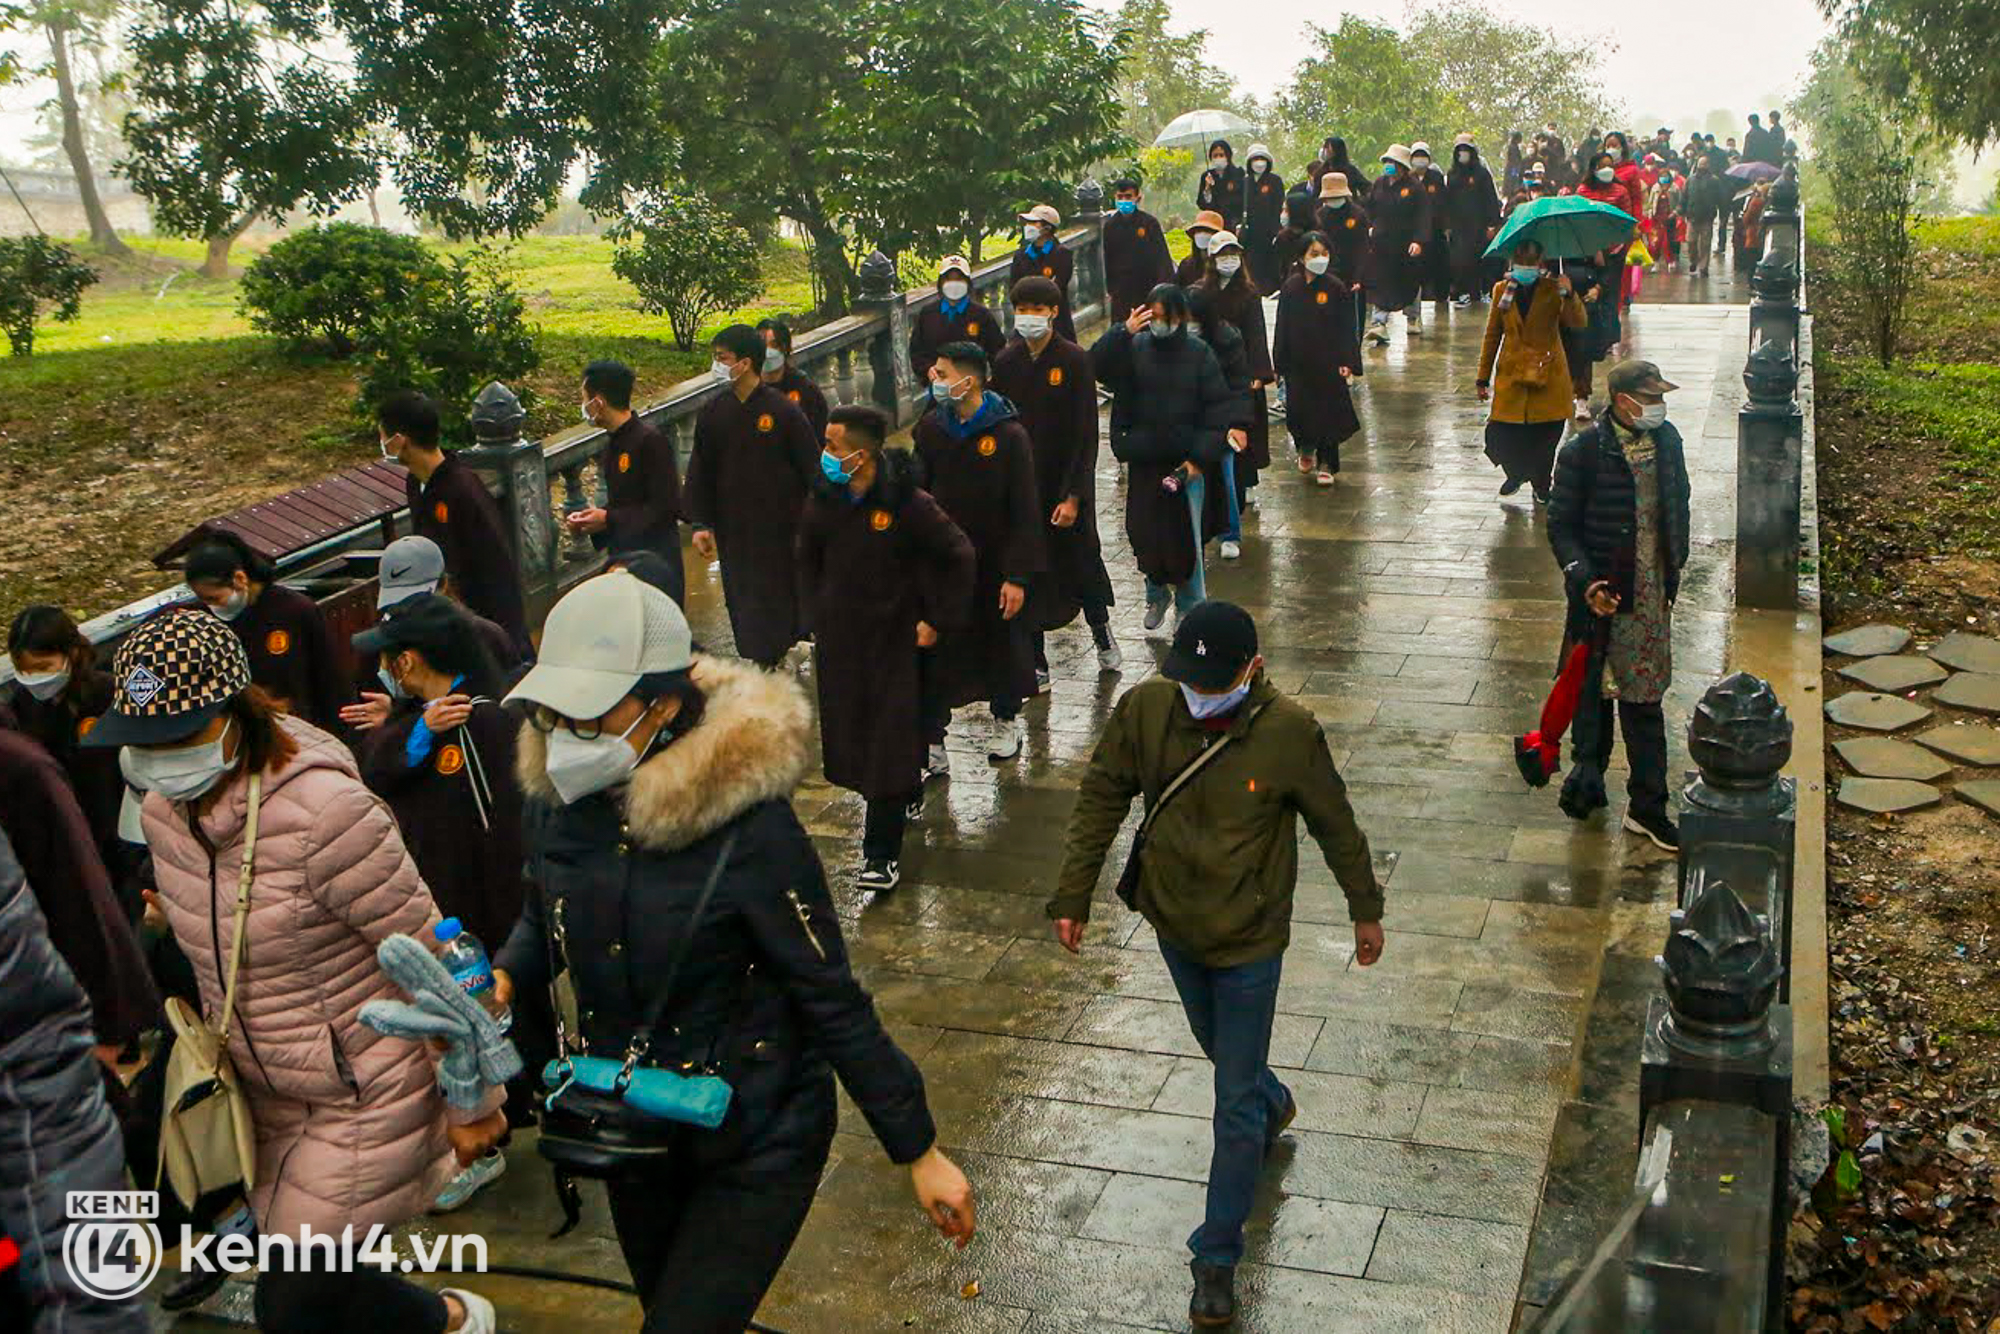 Ảnh: Hàng nghìn người đội mưa, ngồi thuyền xem lễ rước nước trên mặt hồ rộng nghìn ha tại chùa Tam Chúc - Ảnh 9.